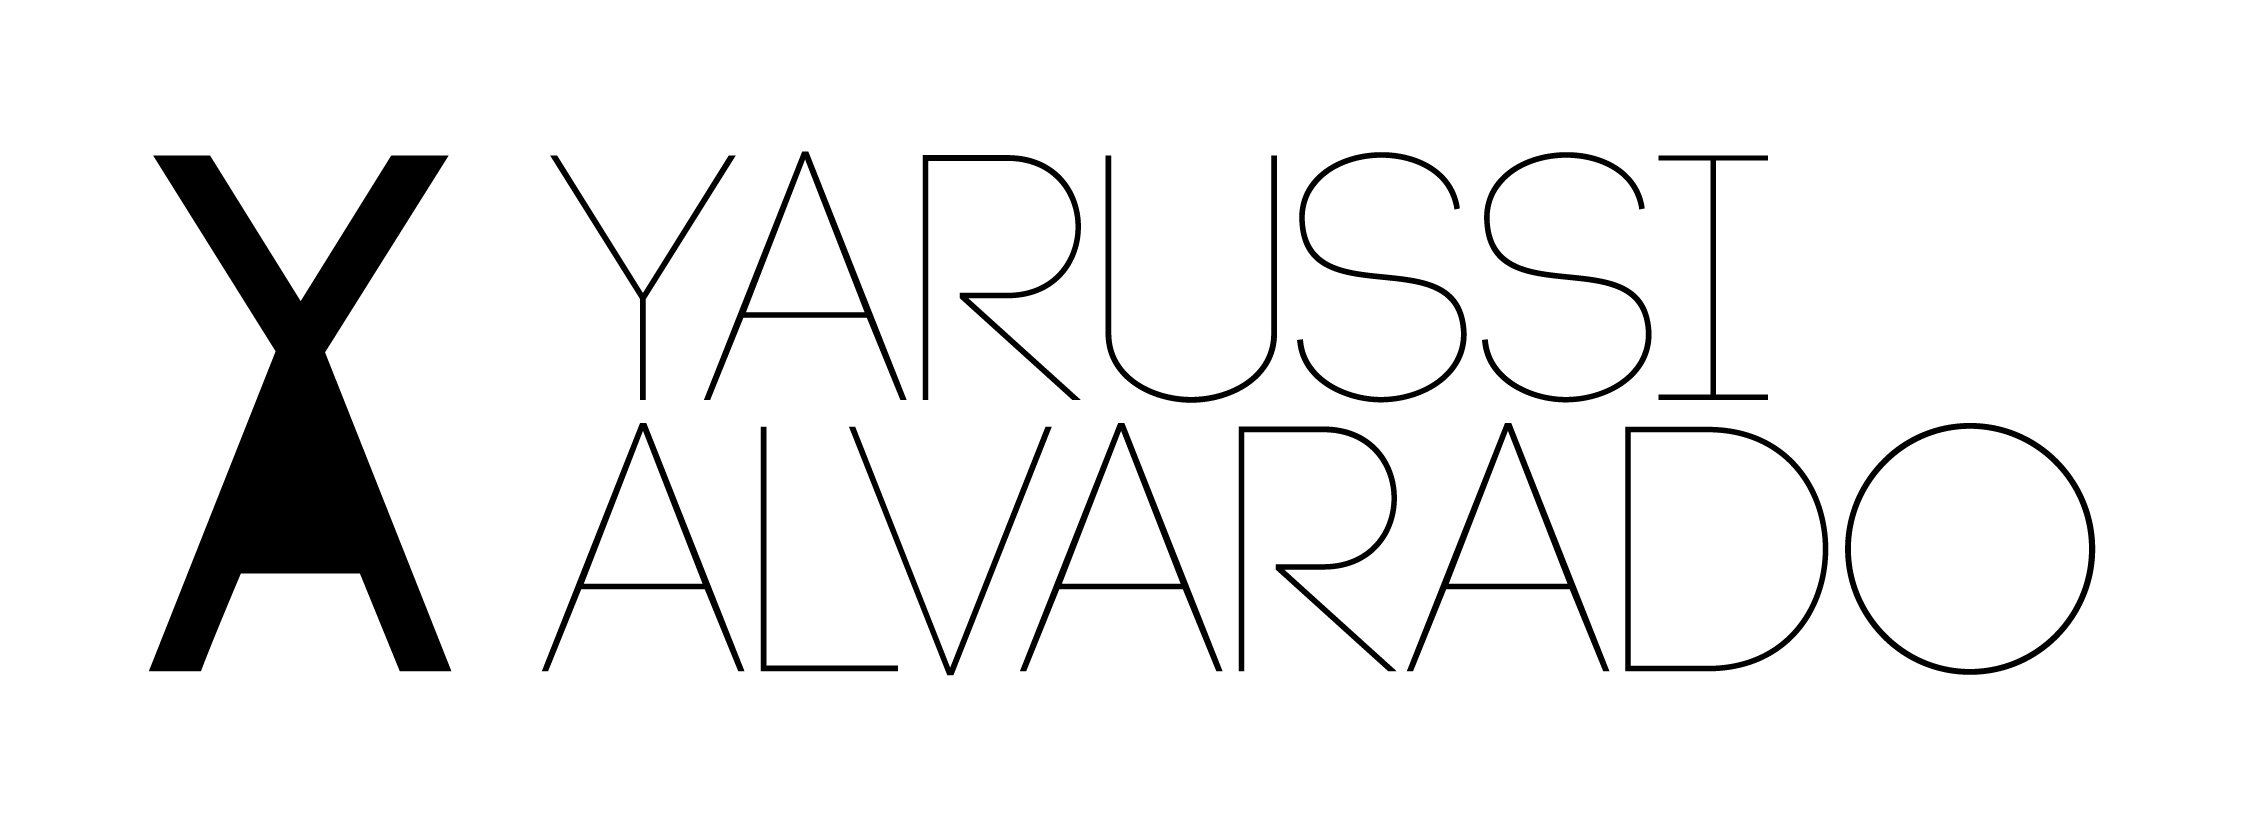 Yarussi Alvarado Store